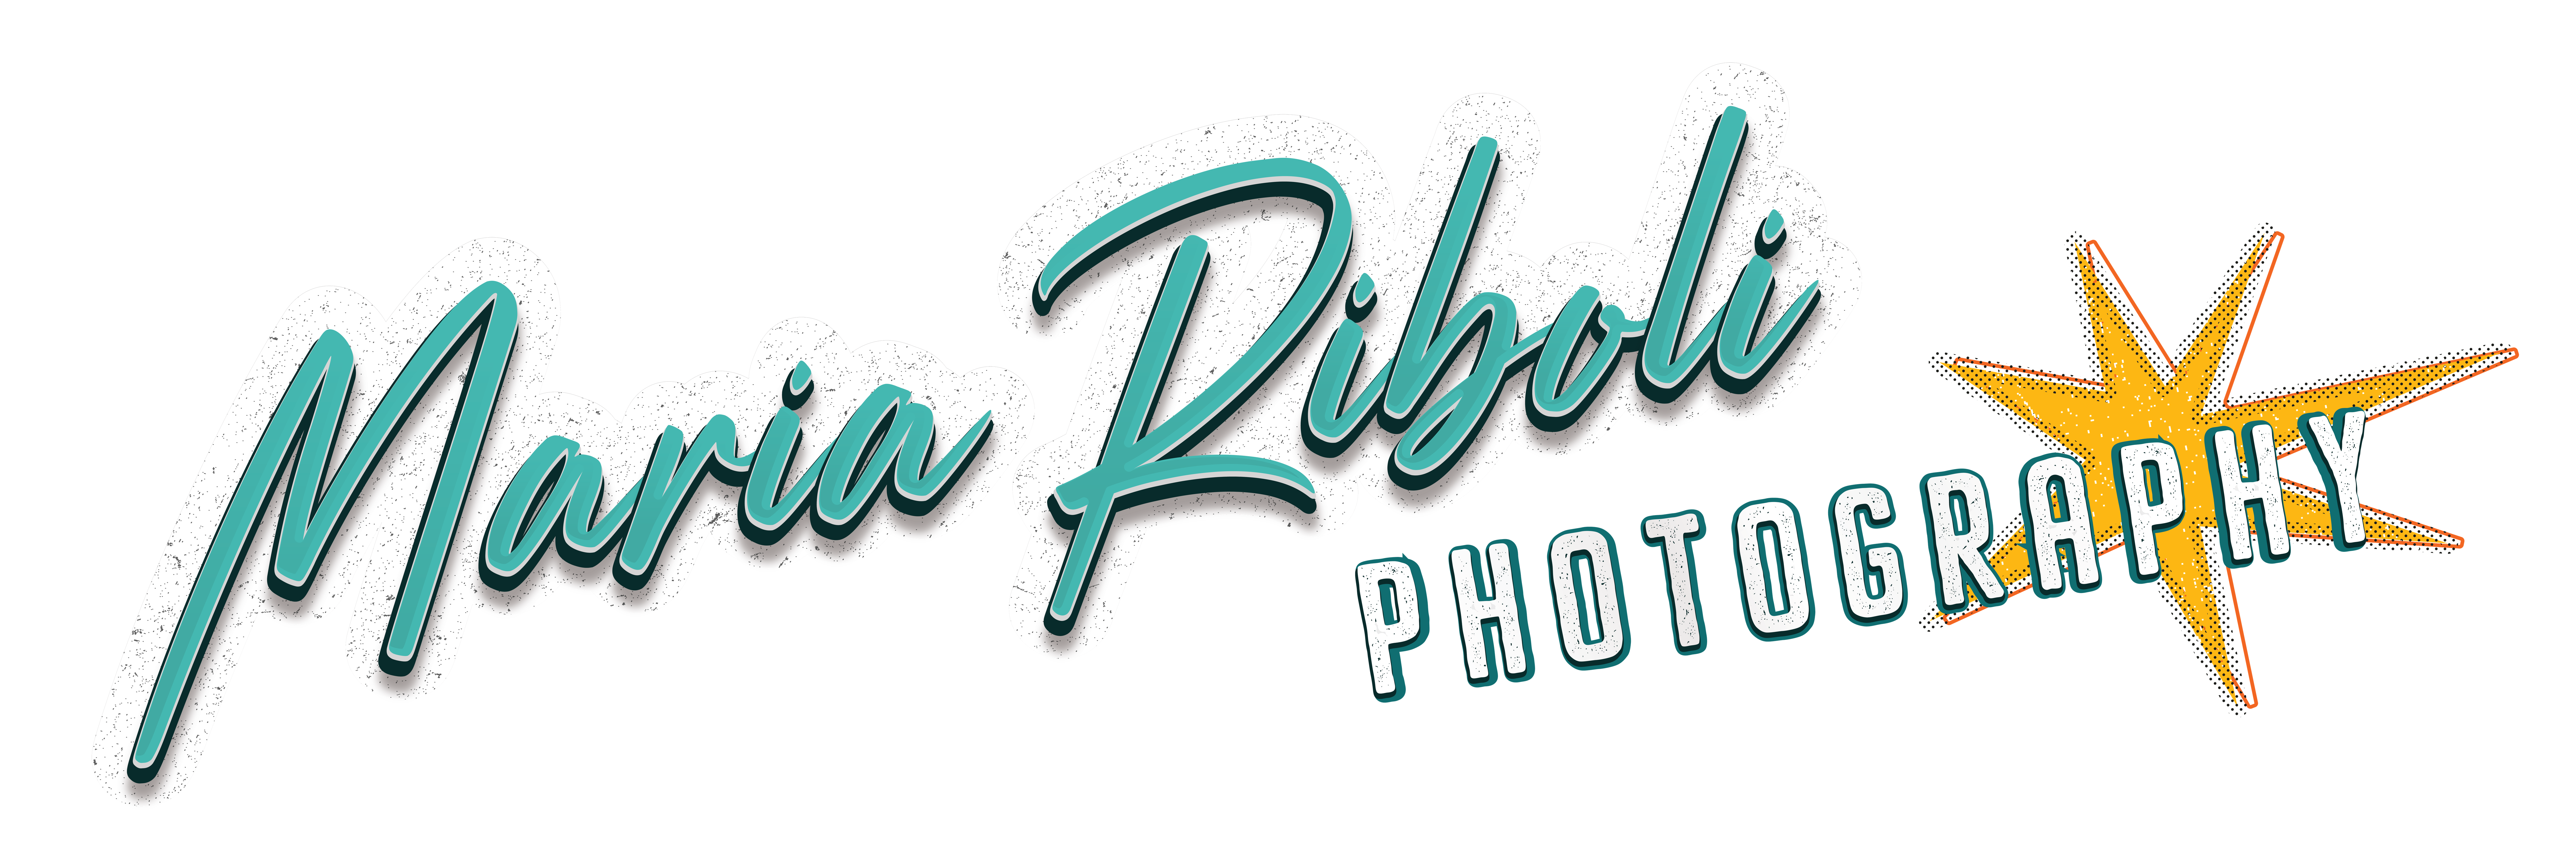 Maria Riboli Photography, a logo of an Orlando Photographer